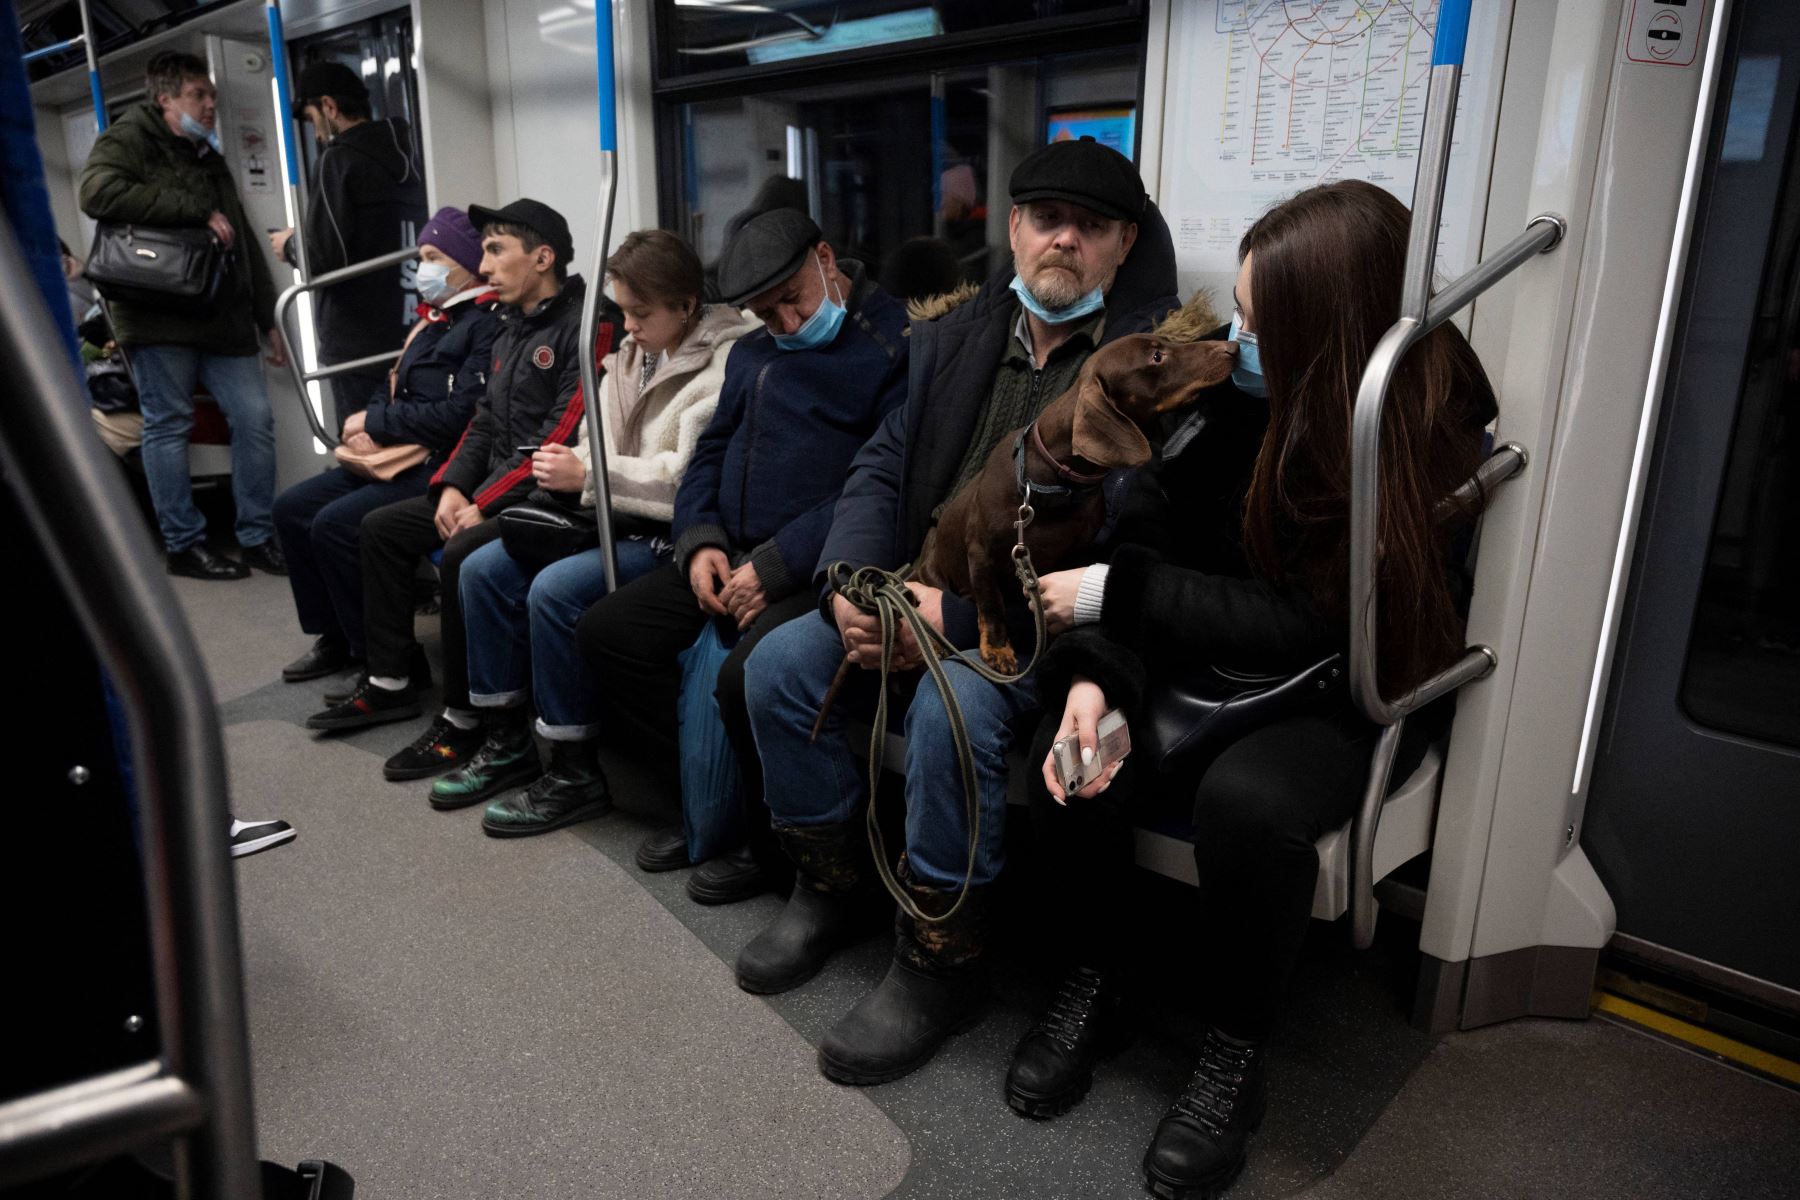 Los pasajeros, algunos con máscaras faciales, viajan en un tren del metro en Moscú, en medio de la pandemia de la enfermedad del coronavirus. Foto: AFP